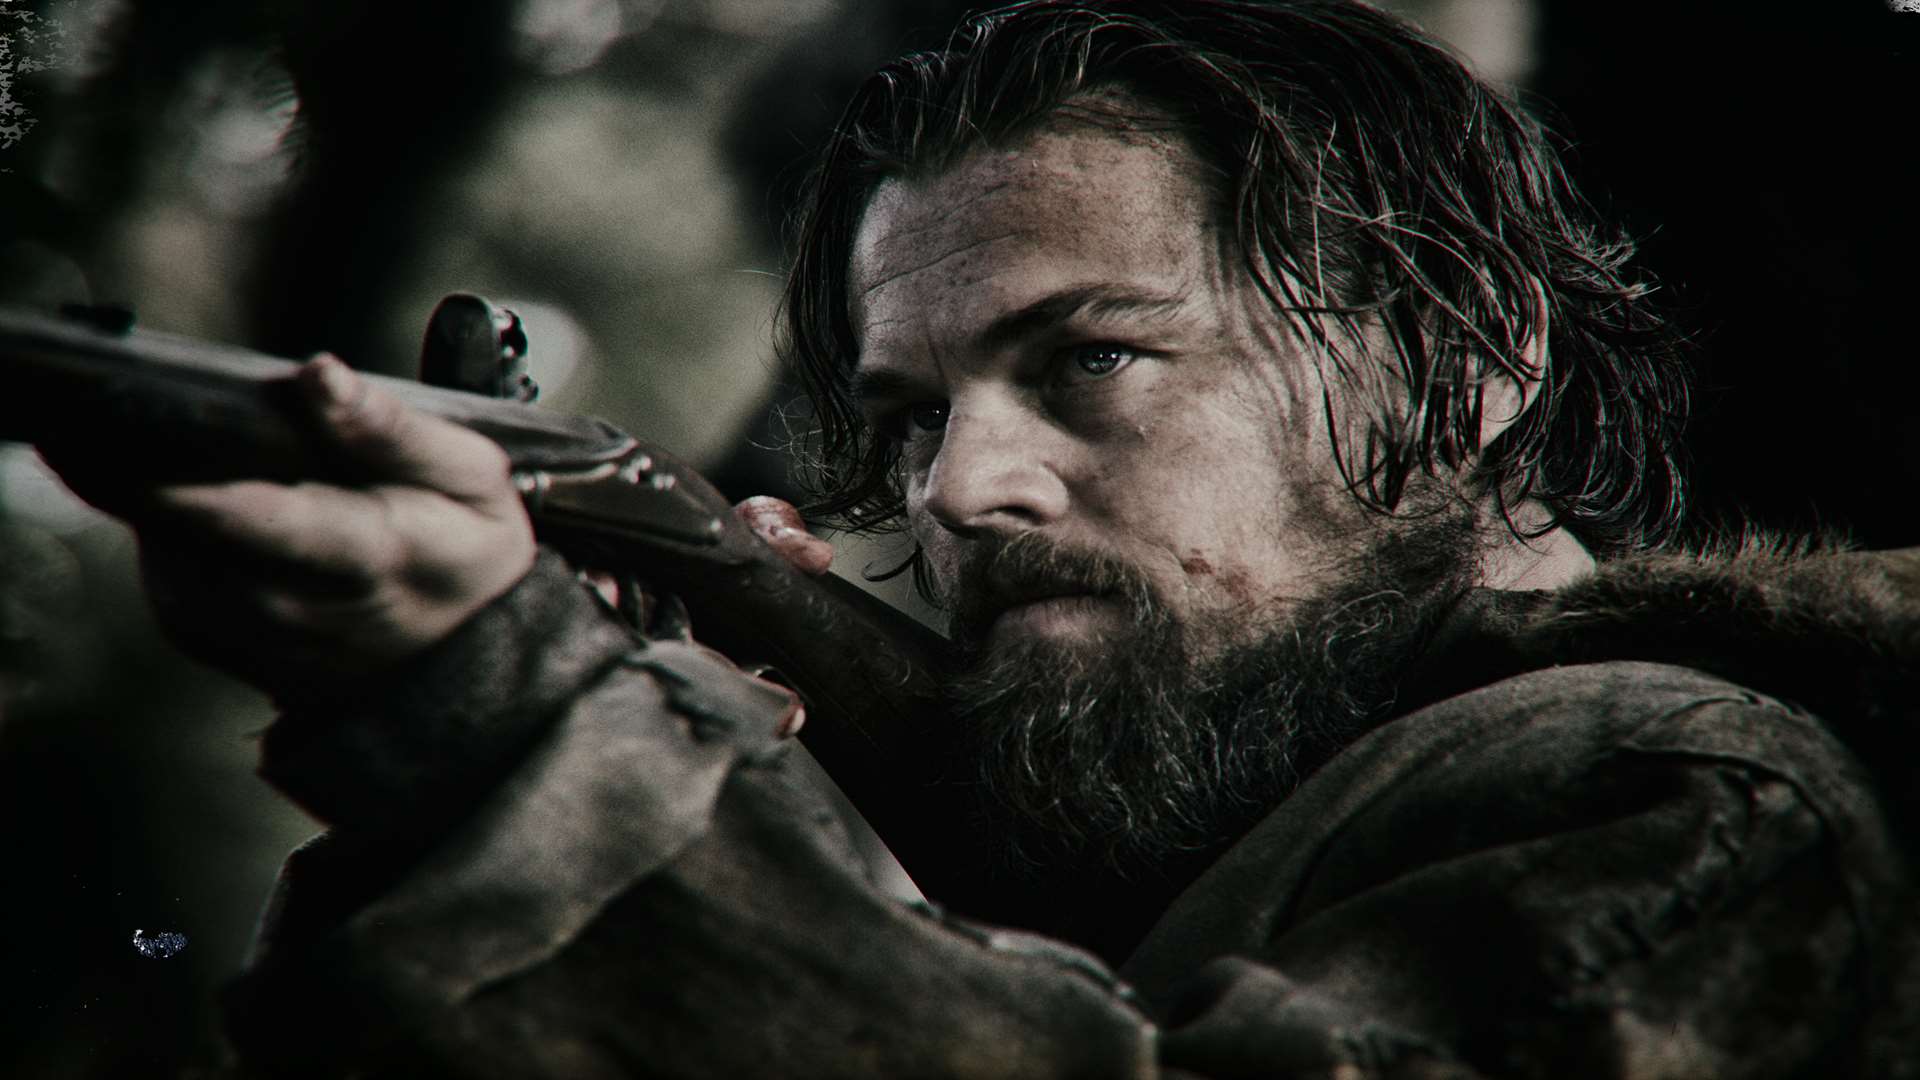 Leonardo DiCaprio stars in The Revenant